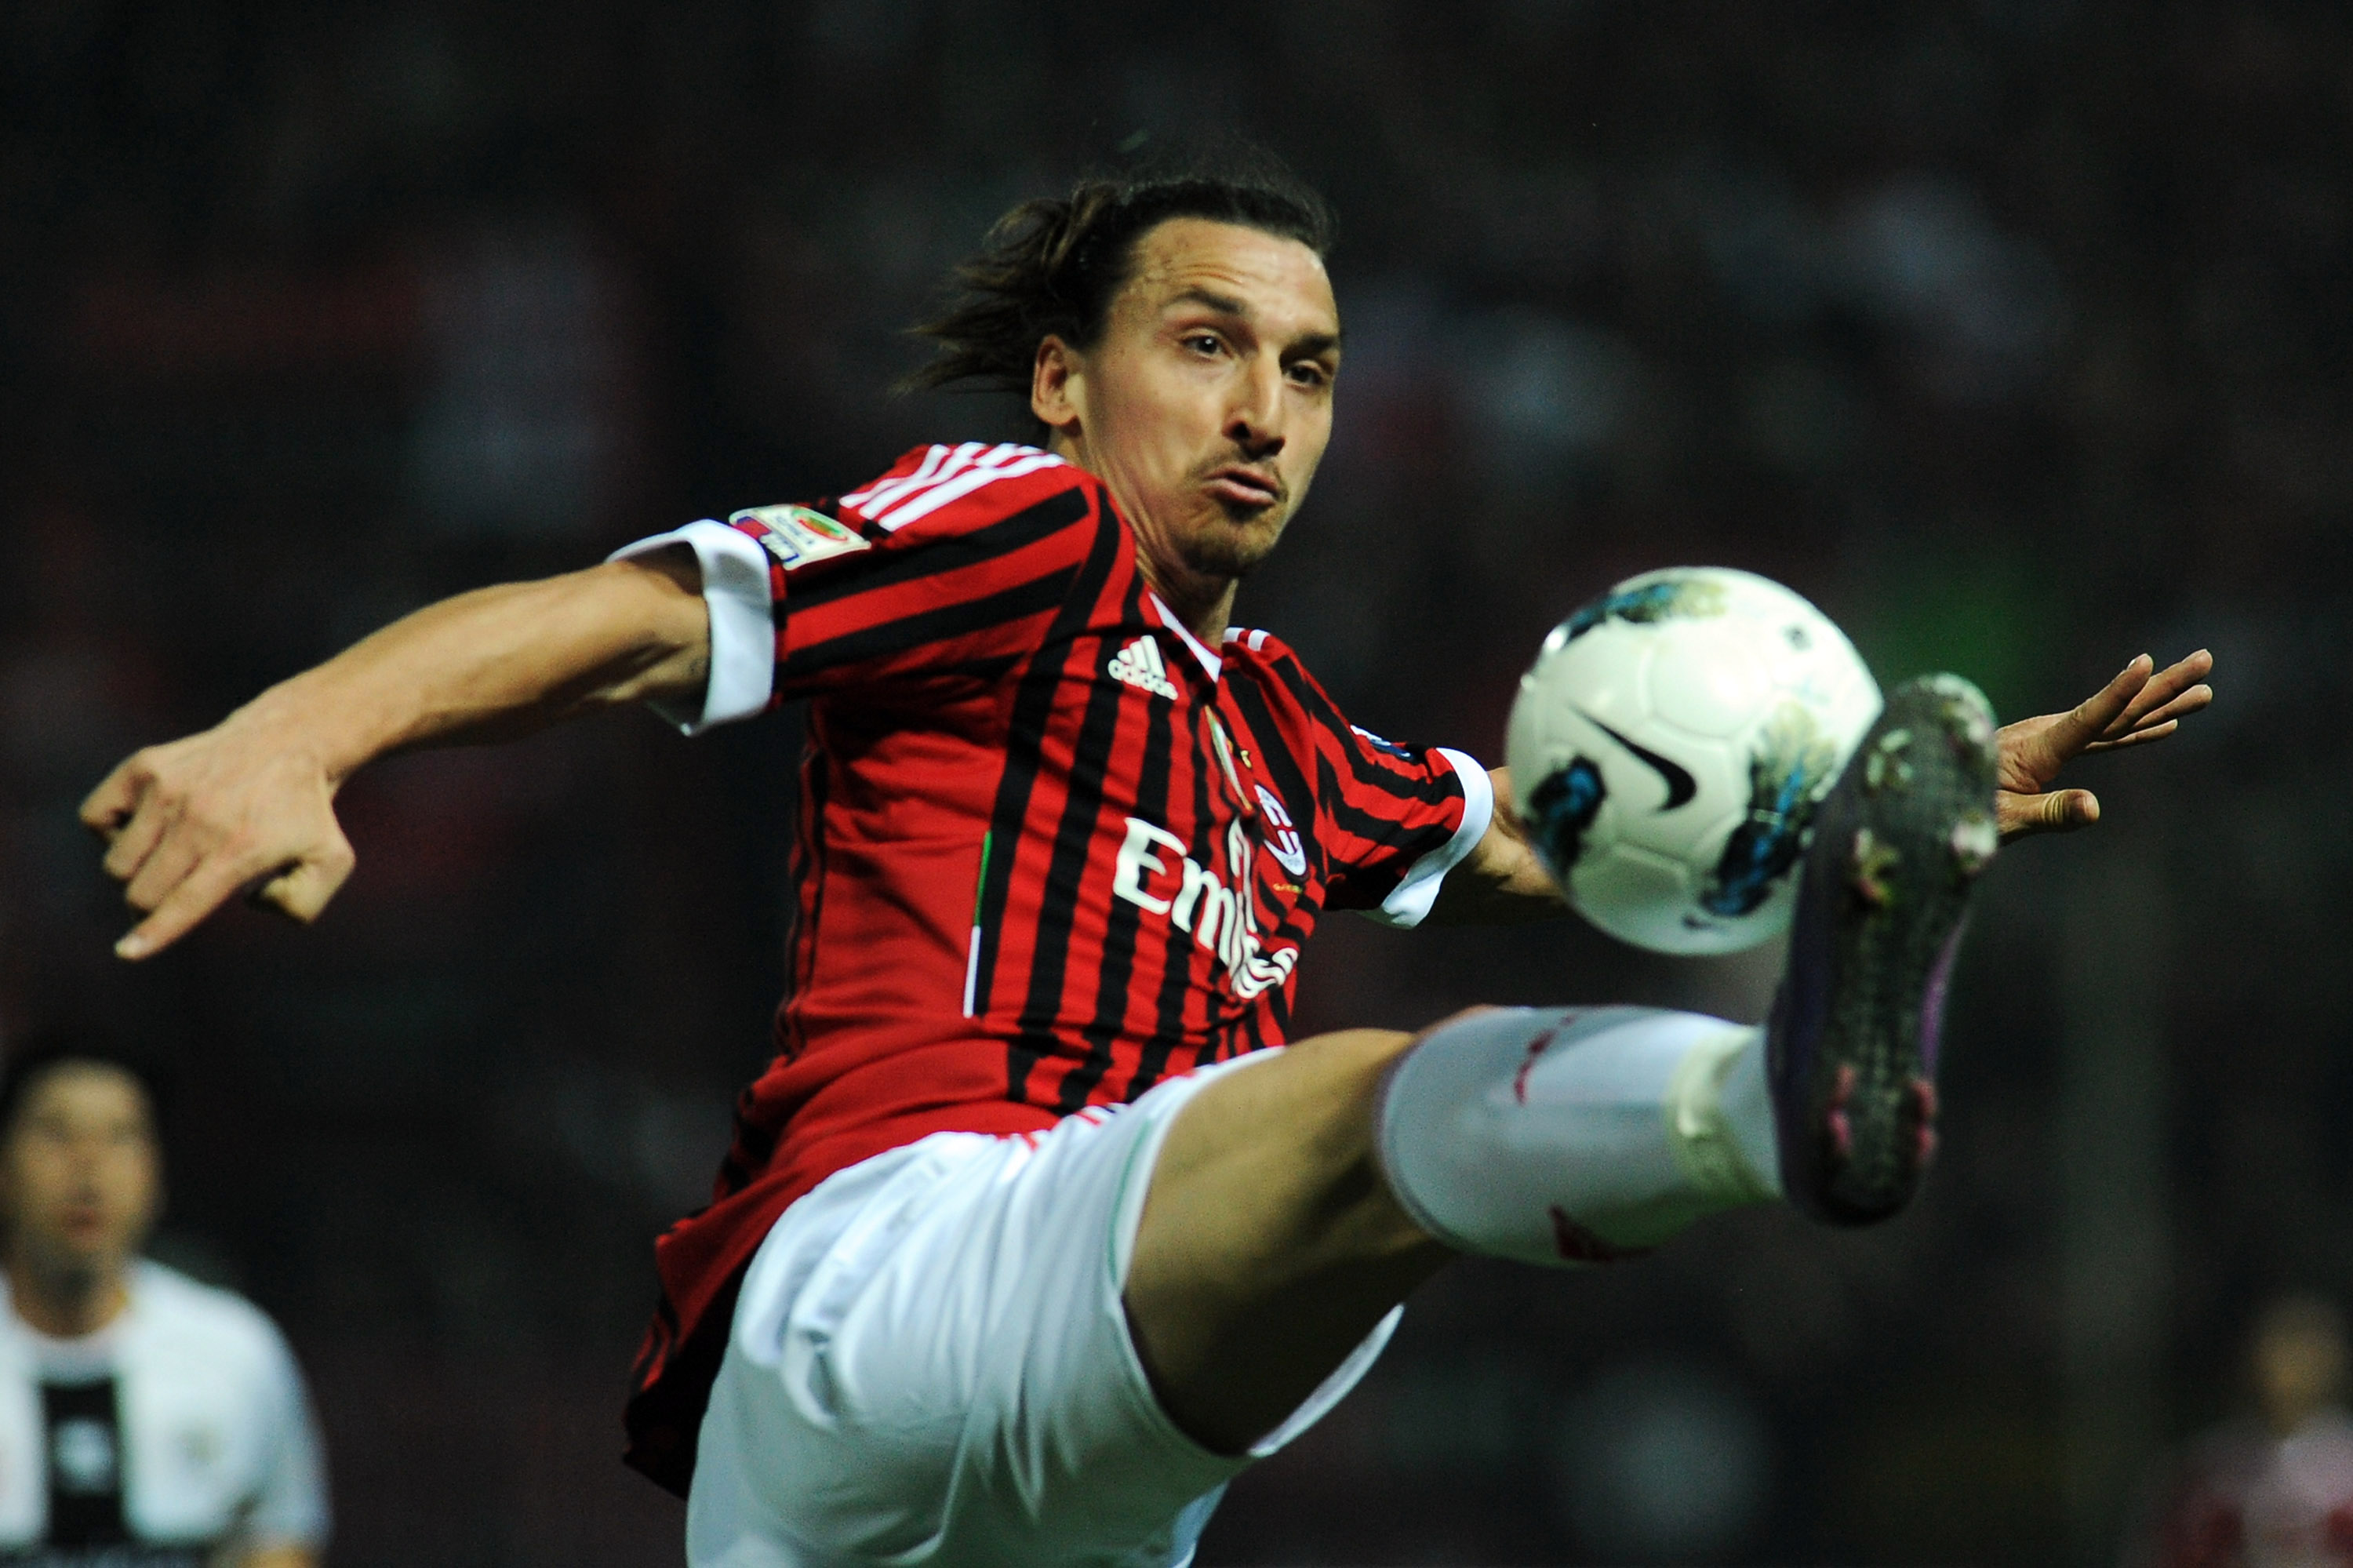 Parma tog emot gästande Milan. En drabbning som hemmalaget förlorade med 2-0. Zlatan stod för det första målet.